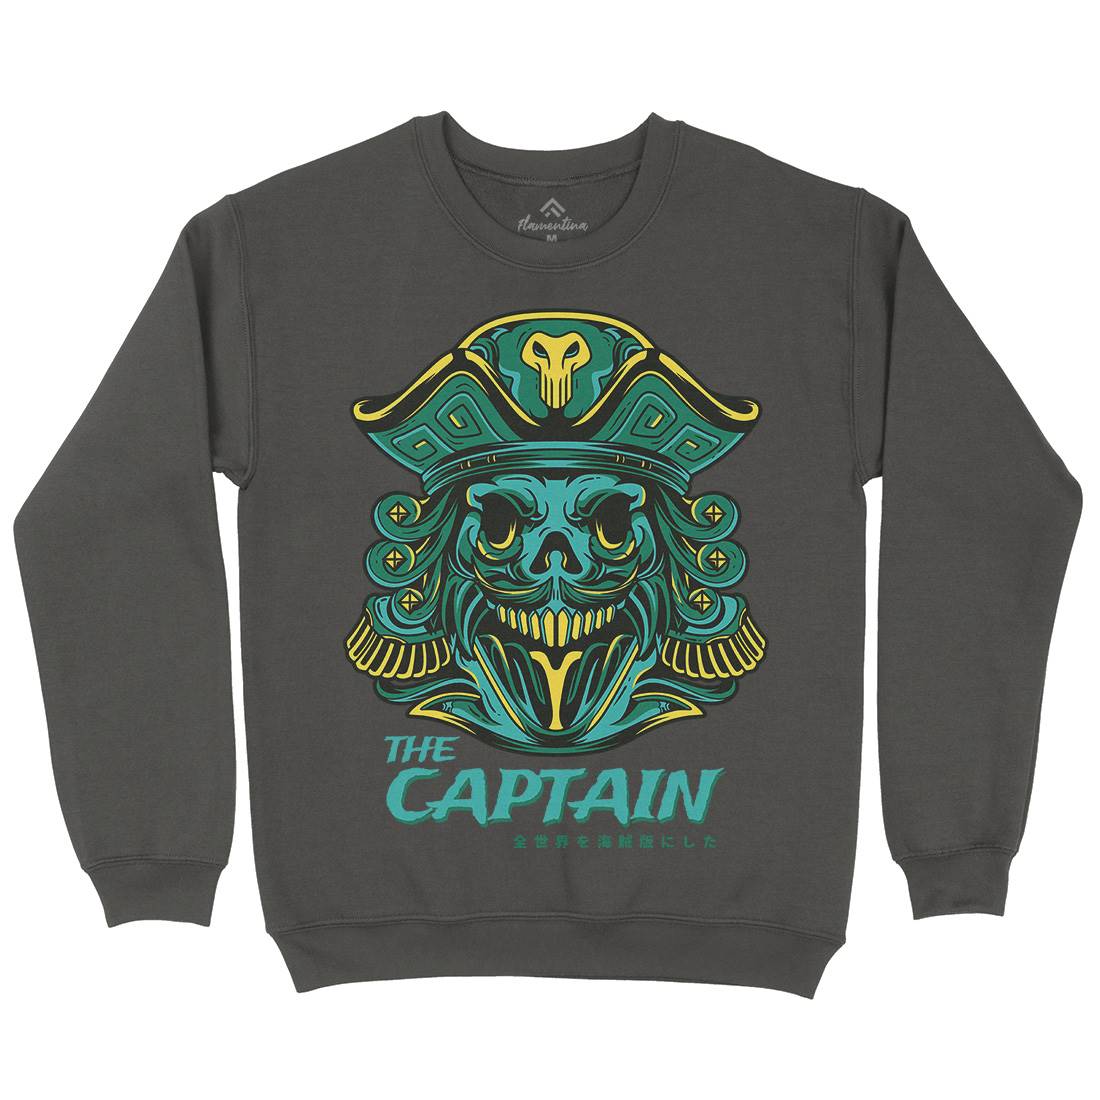 Captain Mens Crew Neck Sweatshirt Navy D847